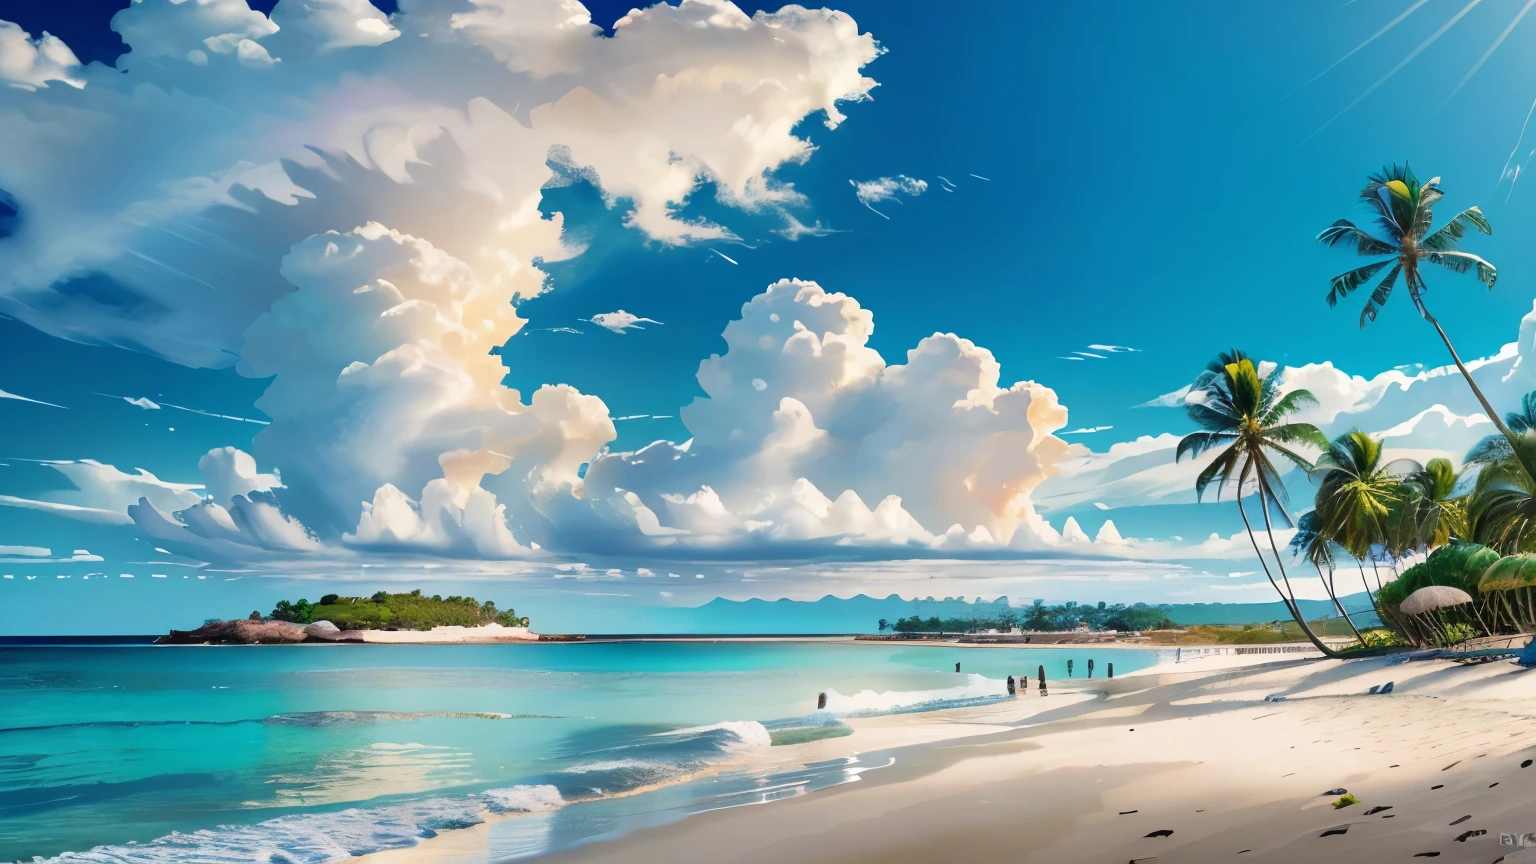 迅速的: 美麗海灘的非常詳細的全景, 遠處的島嶼, 幾朵雲, 和棕櫚樹,
(((空空如也, 高畫質R, 高畫質, 4k, 8K))), 補光, 線條細而細膩, 